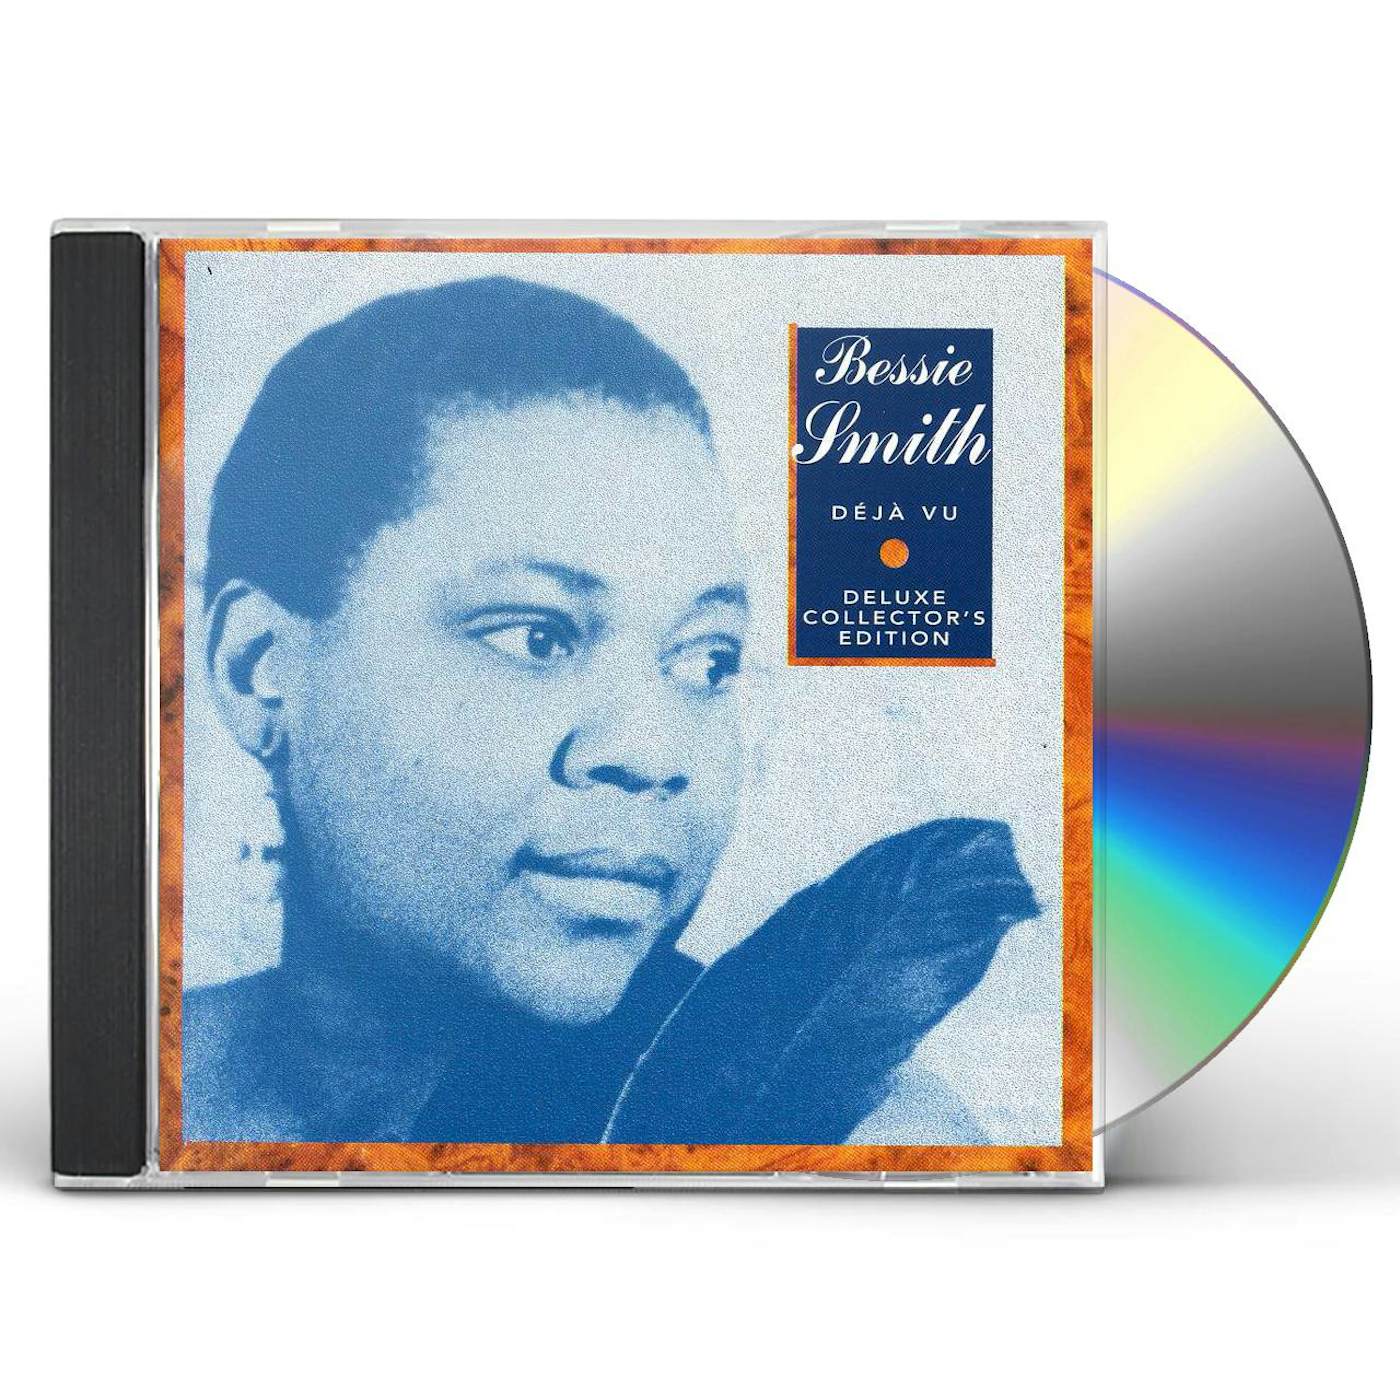 Bessie Smith D+J+ VU CD